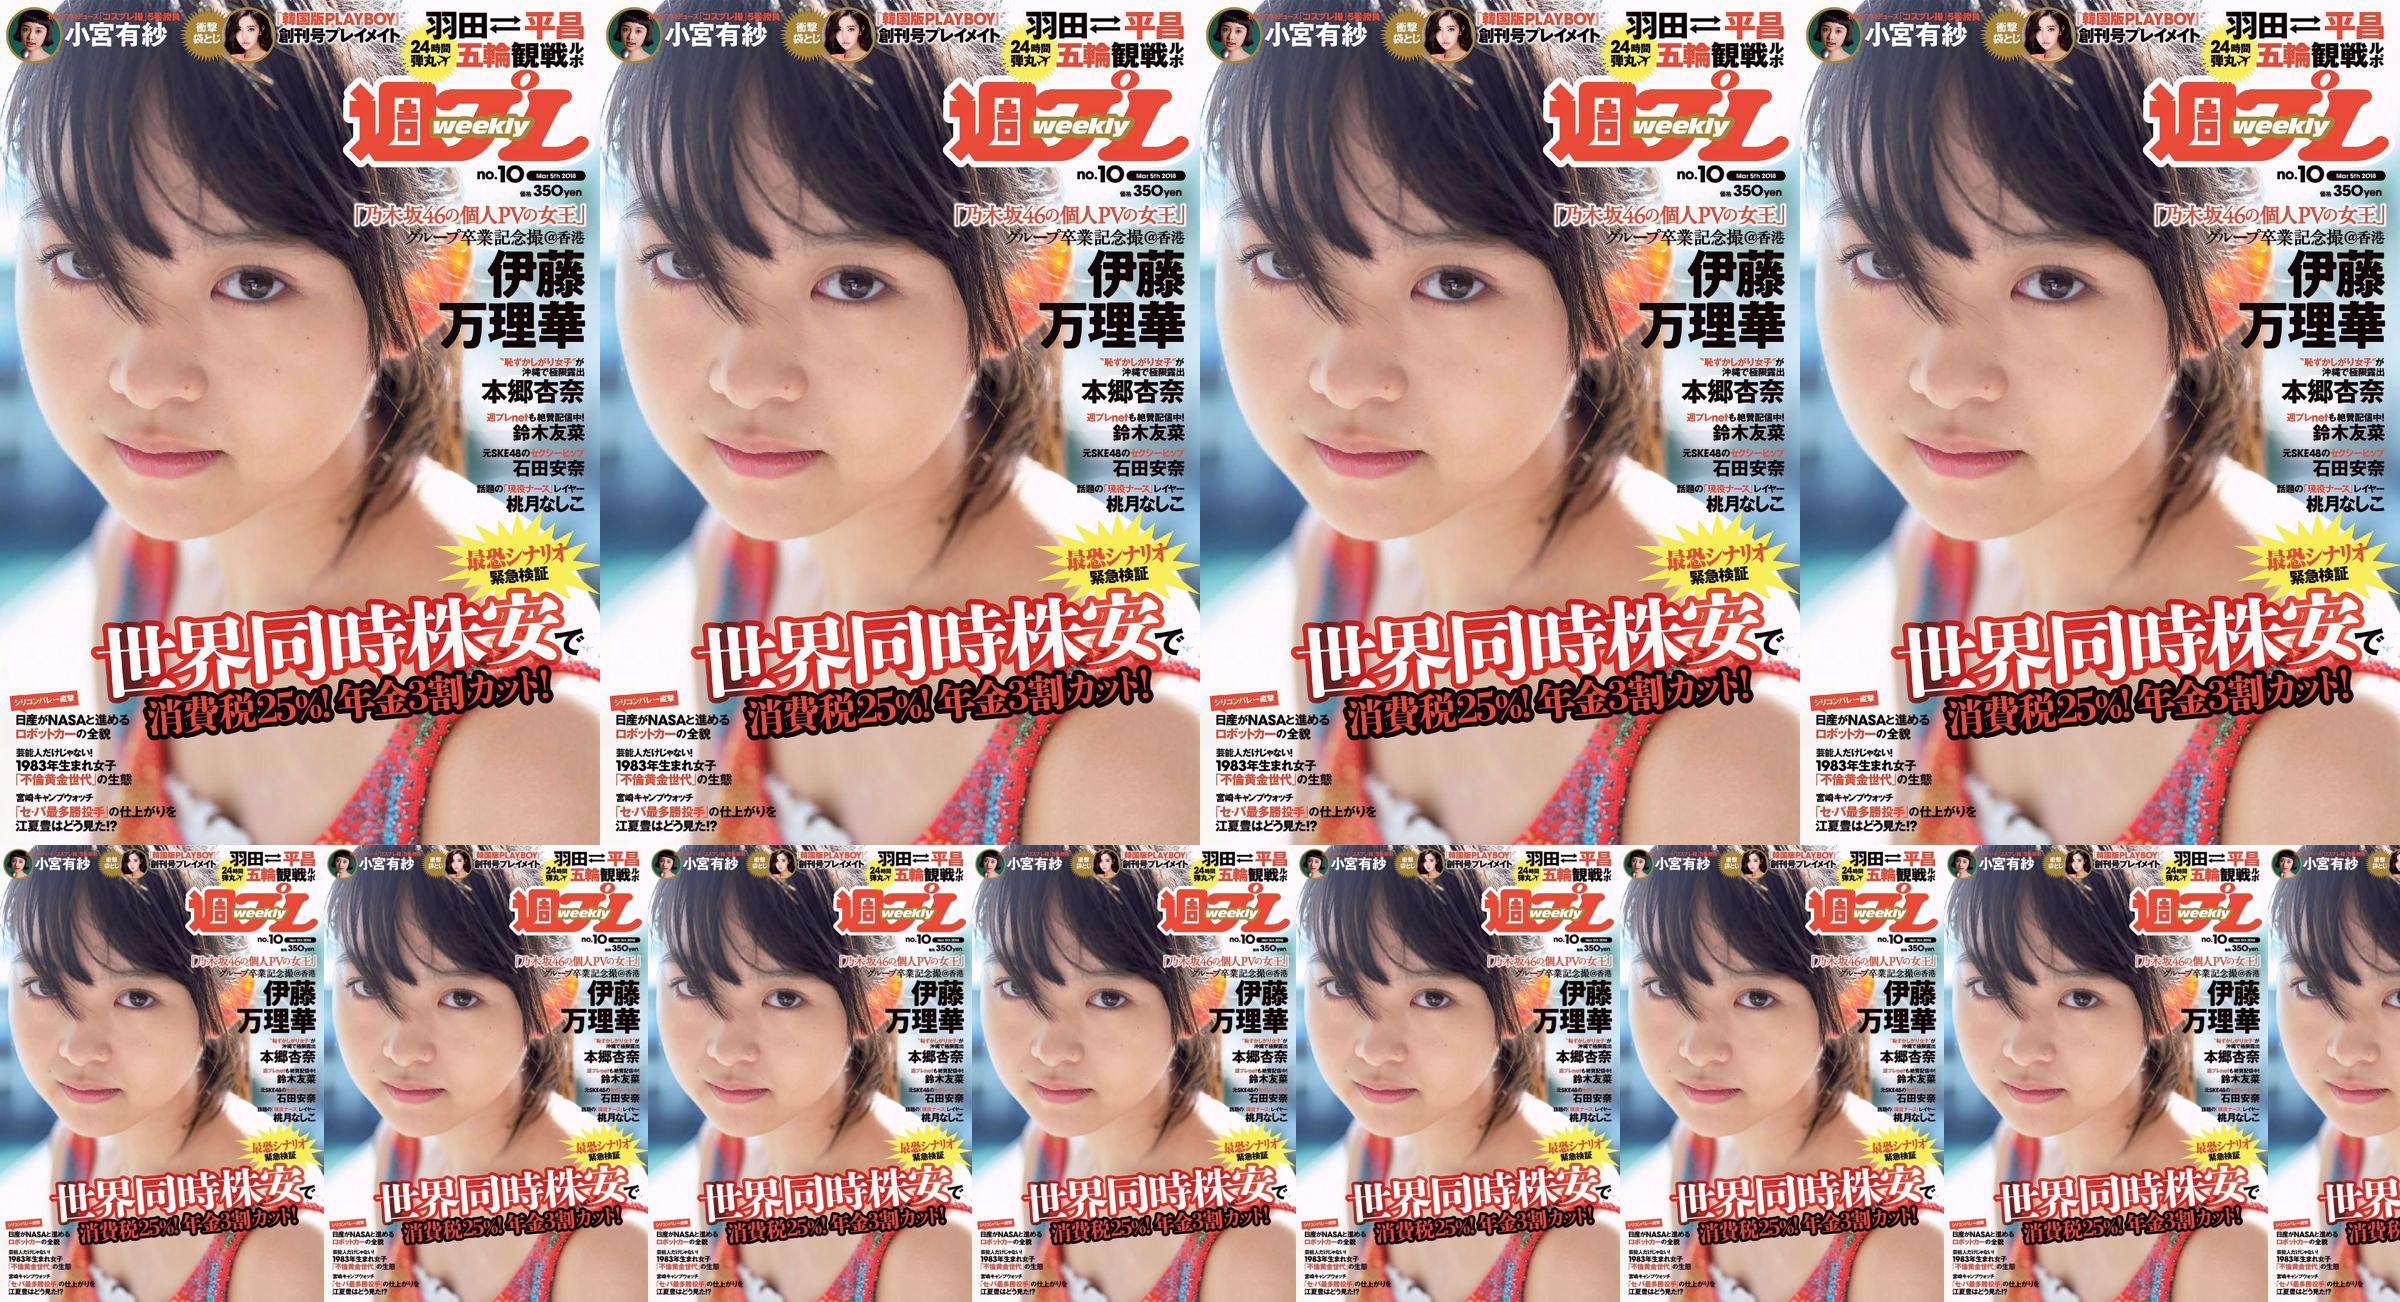 Marika Ito Yuuna Suzuki Anna Ishida Anna Hongo Nashiko Momotsuki Arisa Komiya Aoi Tsukasa Lee Young-hwa [Weekly Playboy] 2018 No.10 Photographie No.f4b426 Page 4